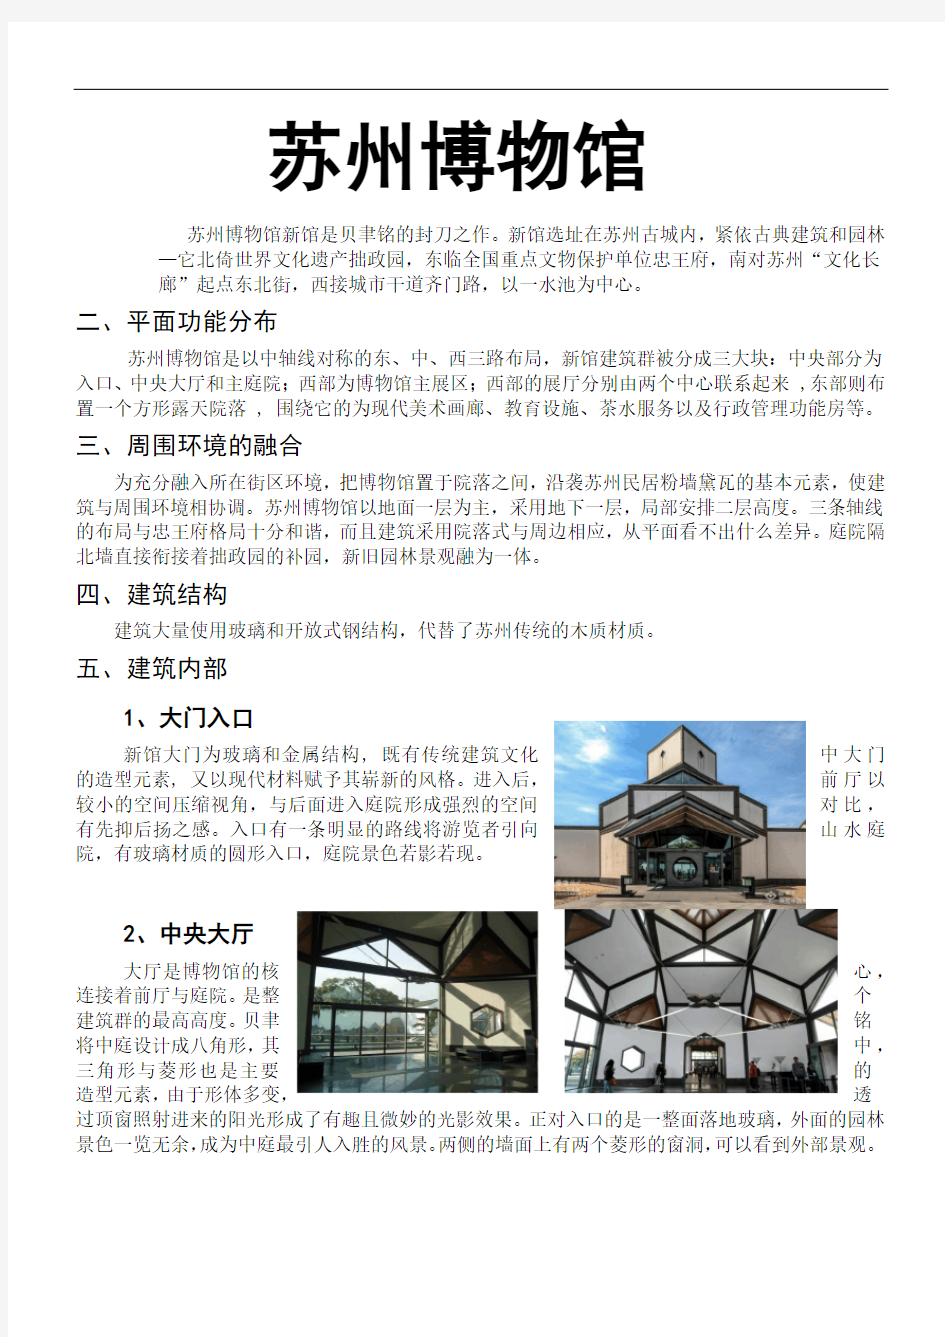 苏州博物馆分析 (1)